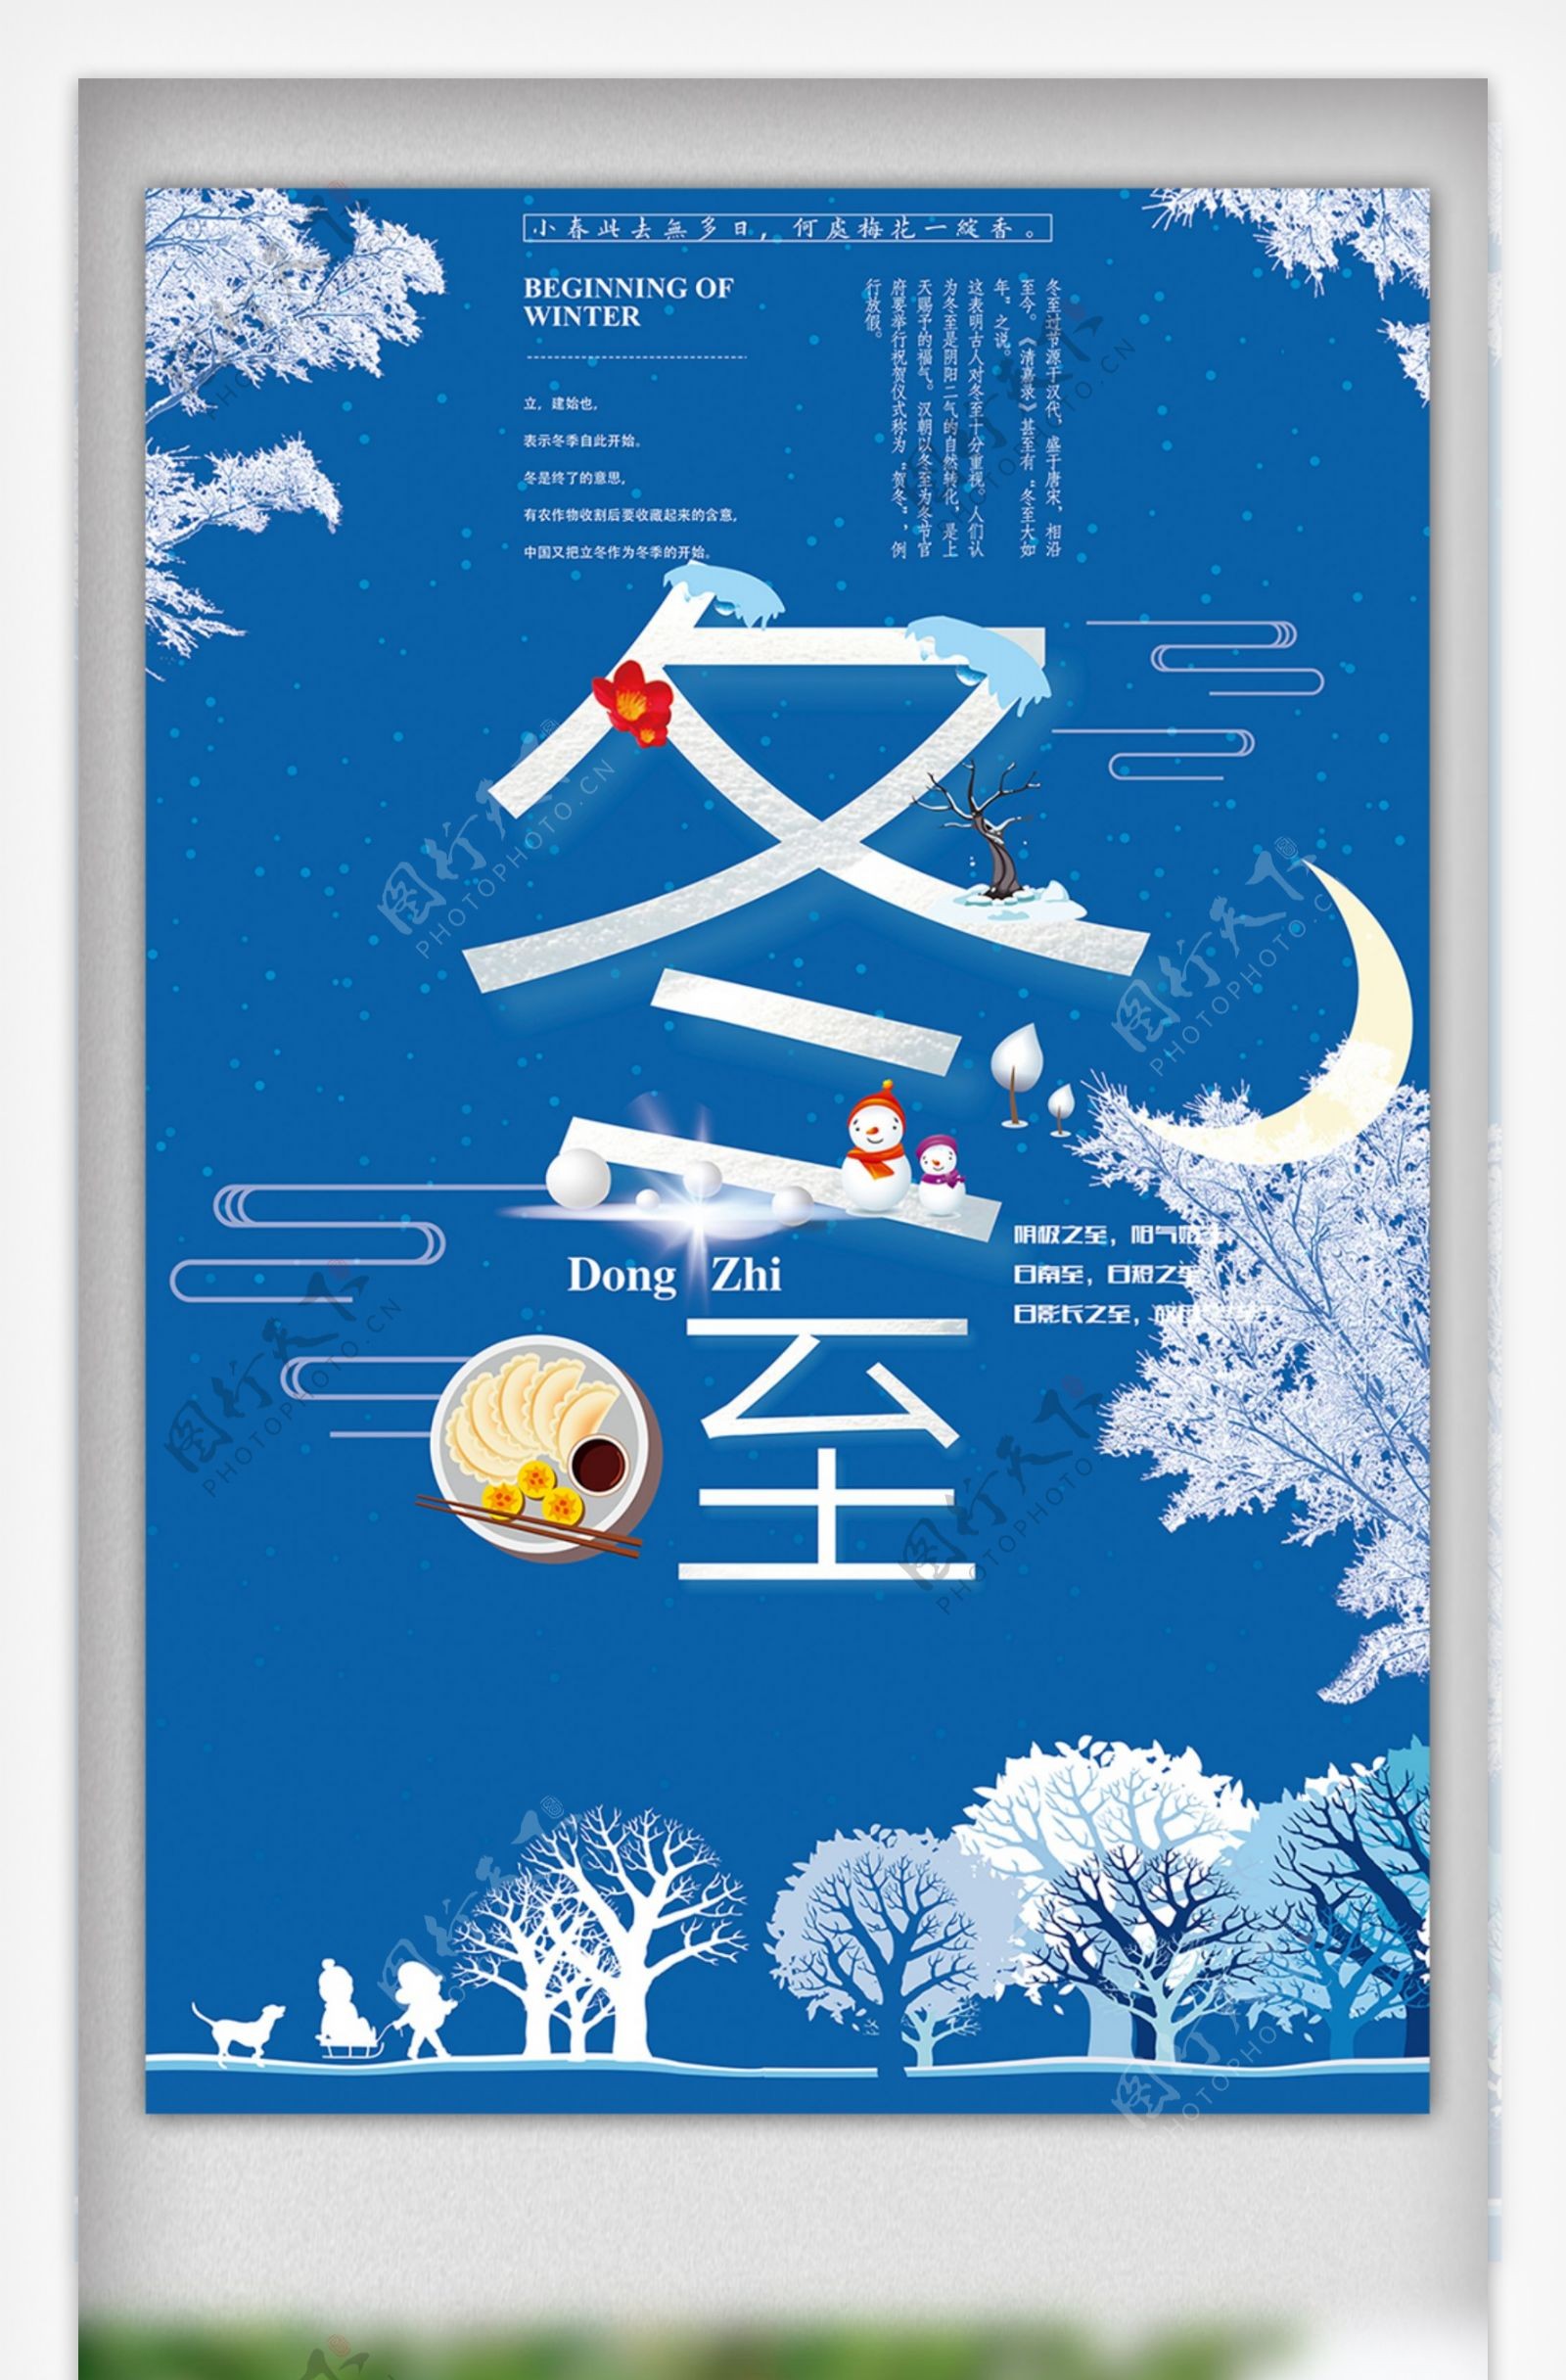 中国传统二十四节气冬至插画风格海报